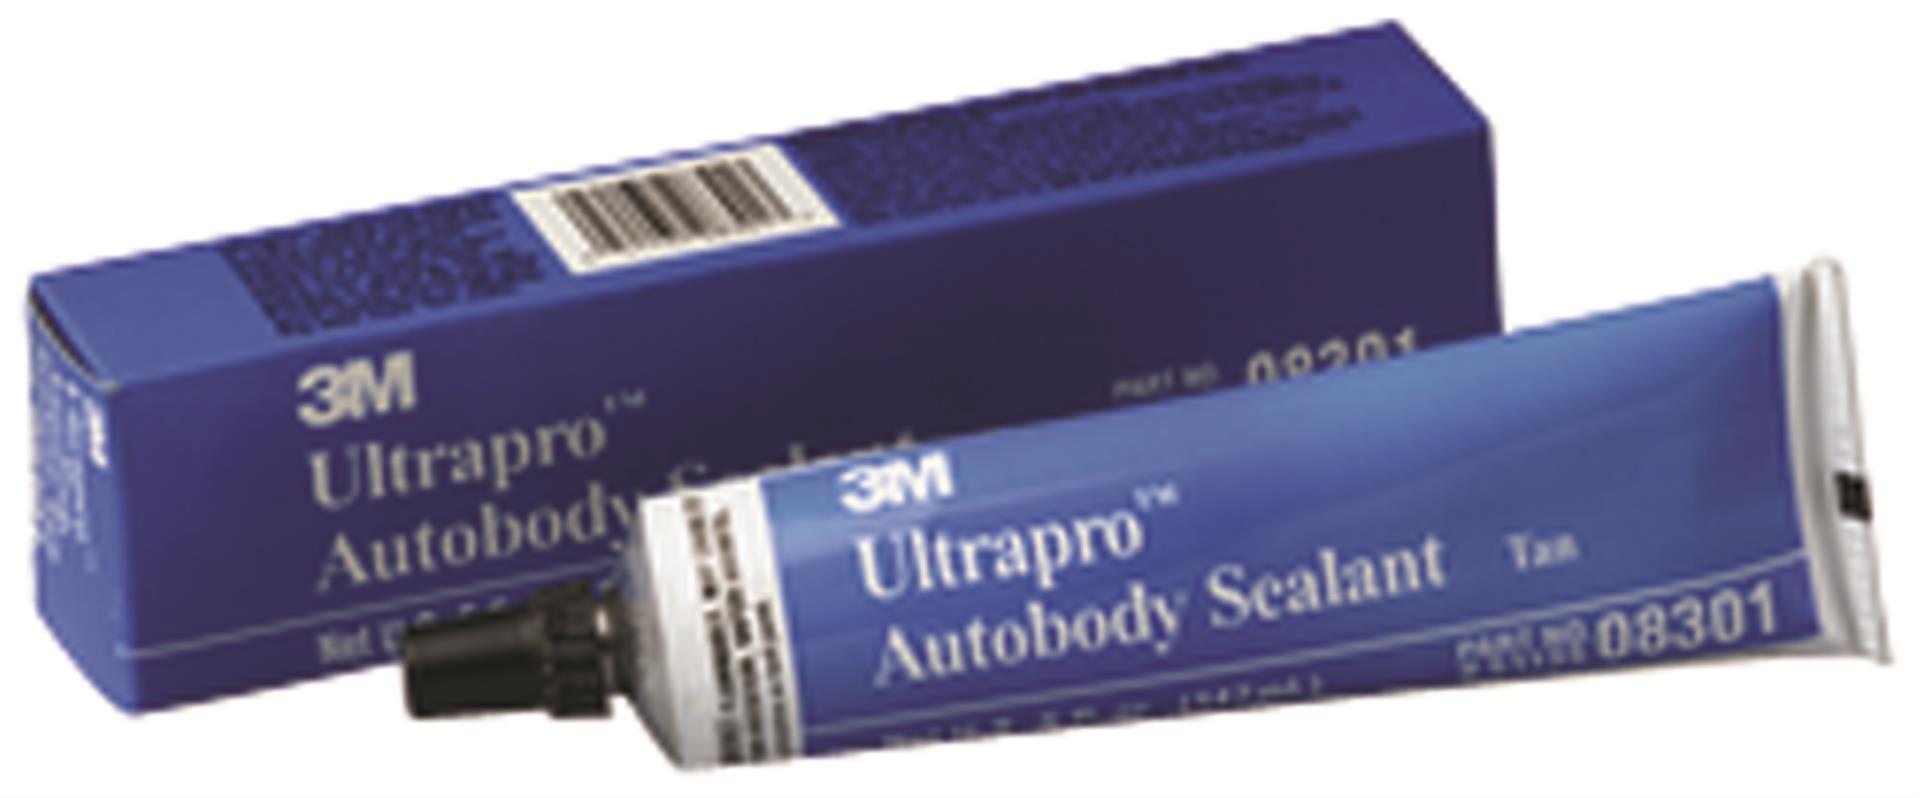 7100142901 - 3M™ Ultrapro™ Autobody Sealant, 08301, Tan, 5 oz Tube, 6 per case